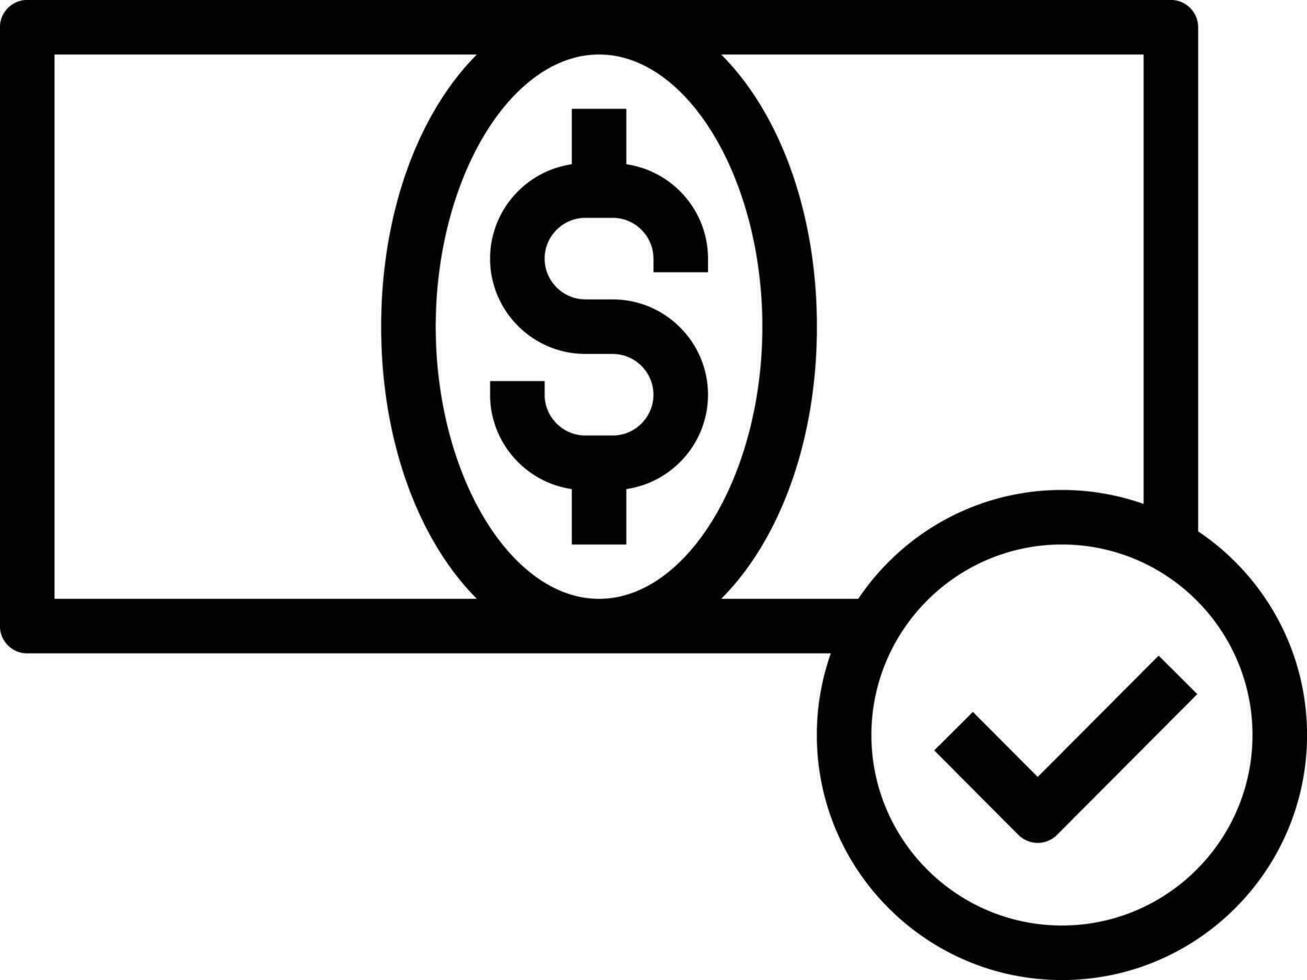 Dollar-Vektorillustration auf einem Hintergrund. hochwertige Symbole. Vektorsymbole für Konzept und Grafikdesign. vektor